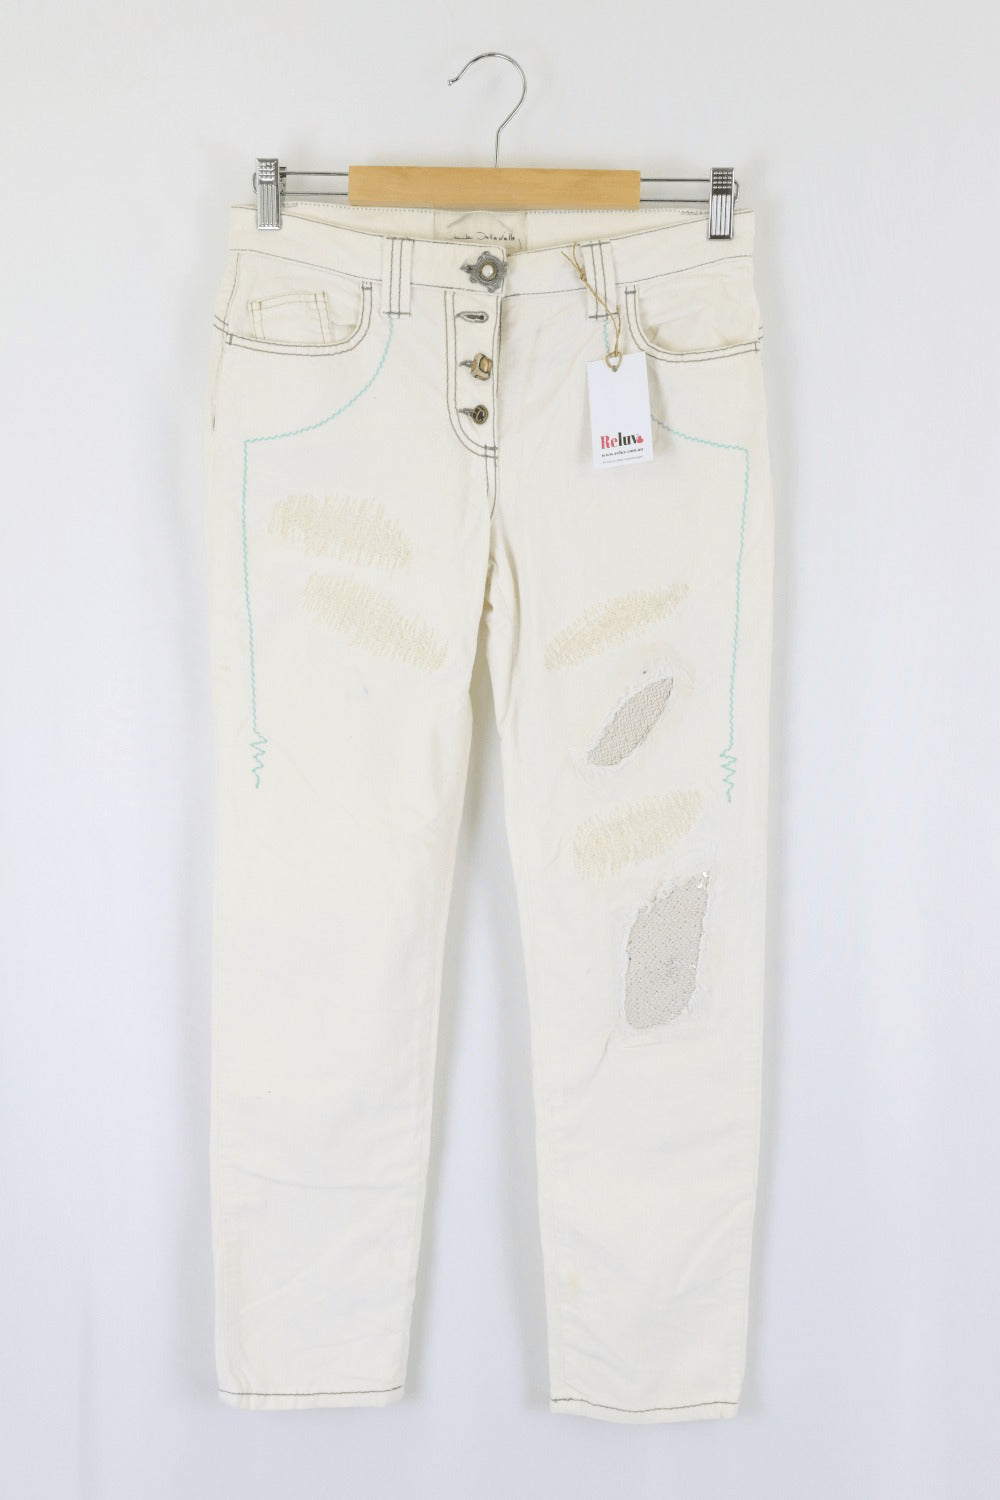 Elisa Cavaletti White Jeans 27 (AU 8)